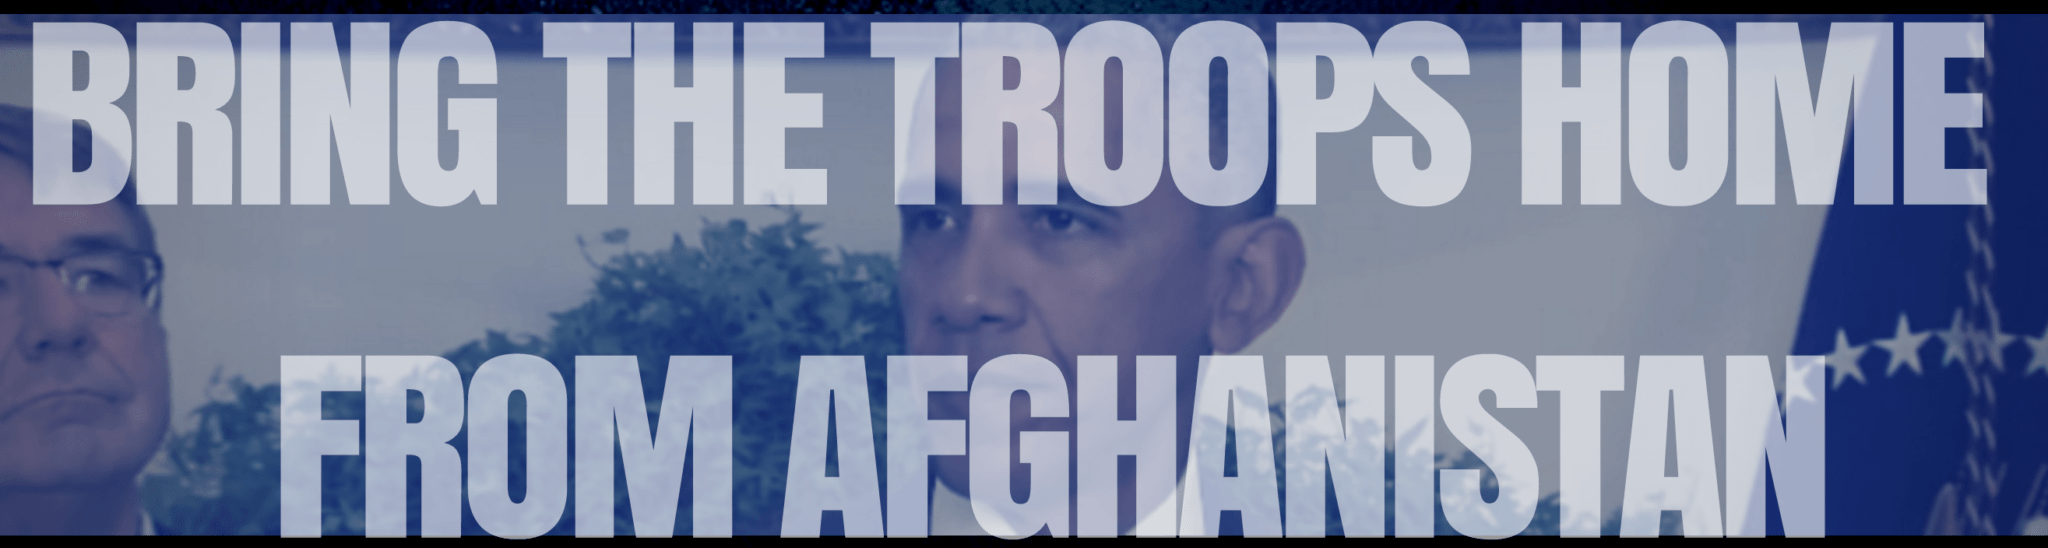 bring troops home afghanistan